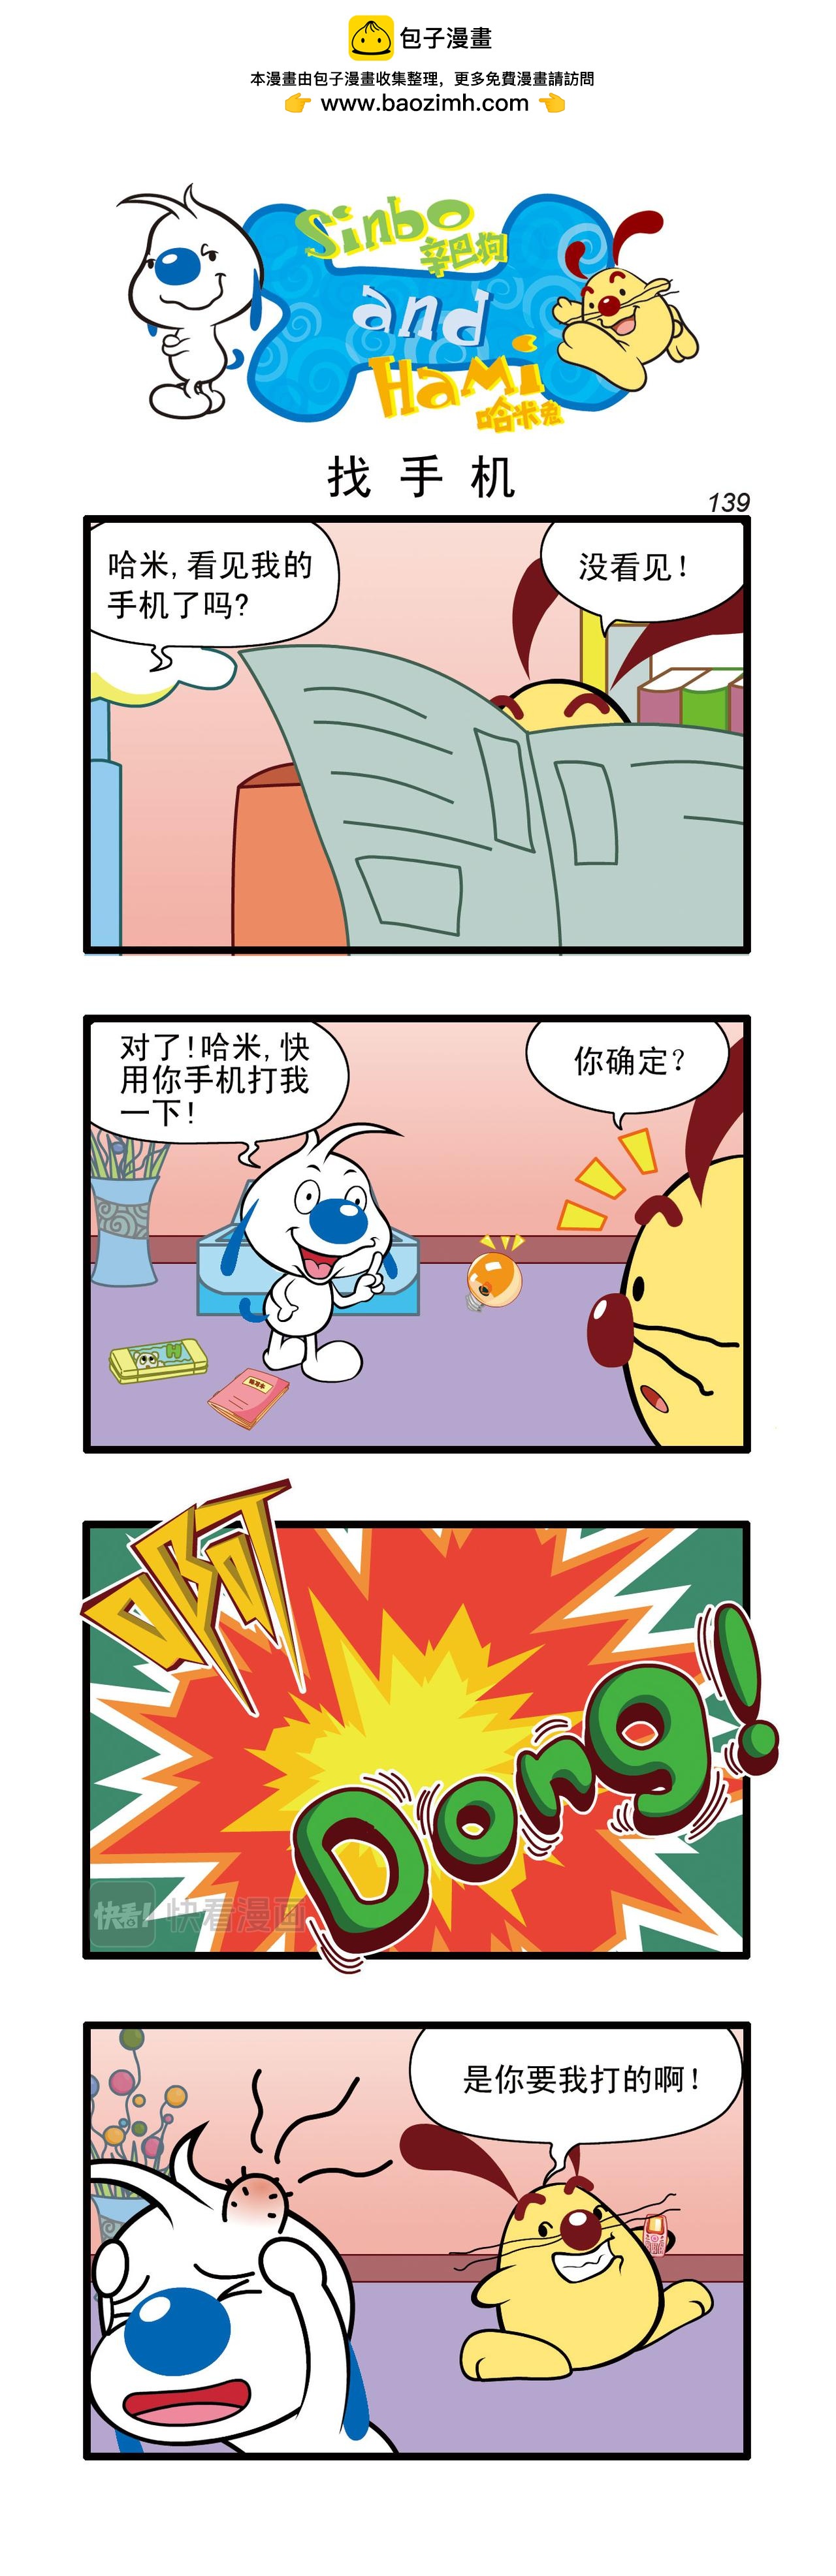 辛巴狗日常漫畫 - 多格41 - 1